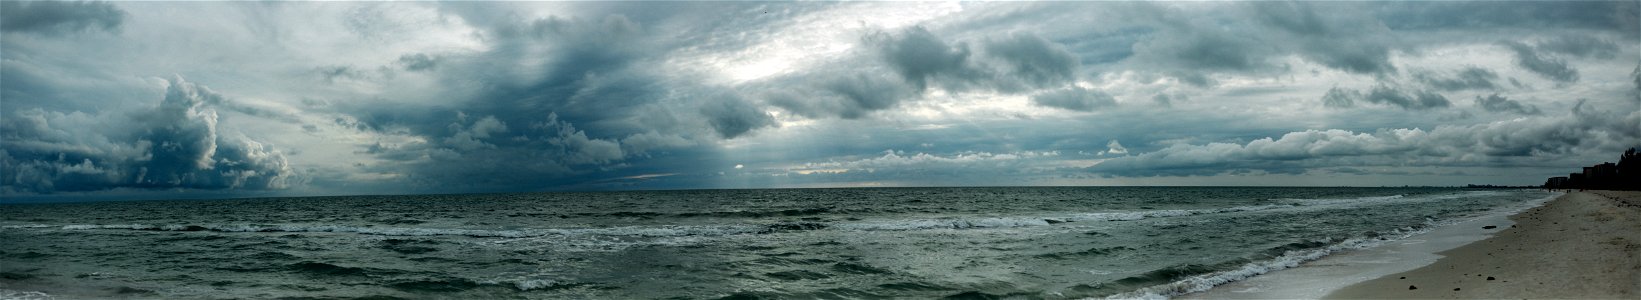 Beach Clouds Landscape photo